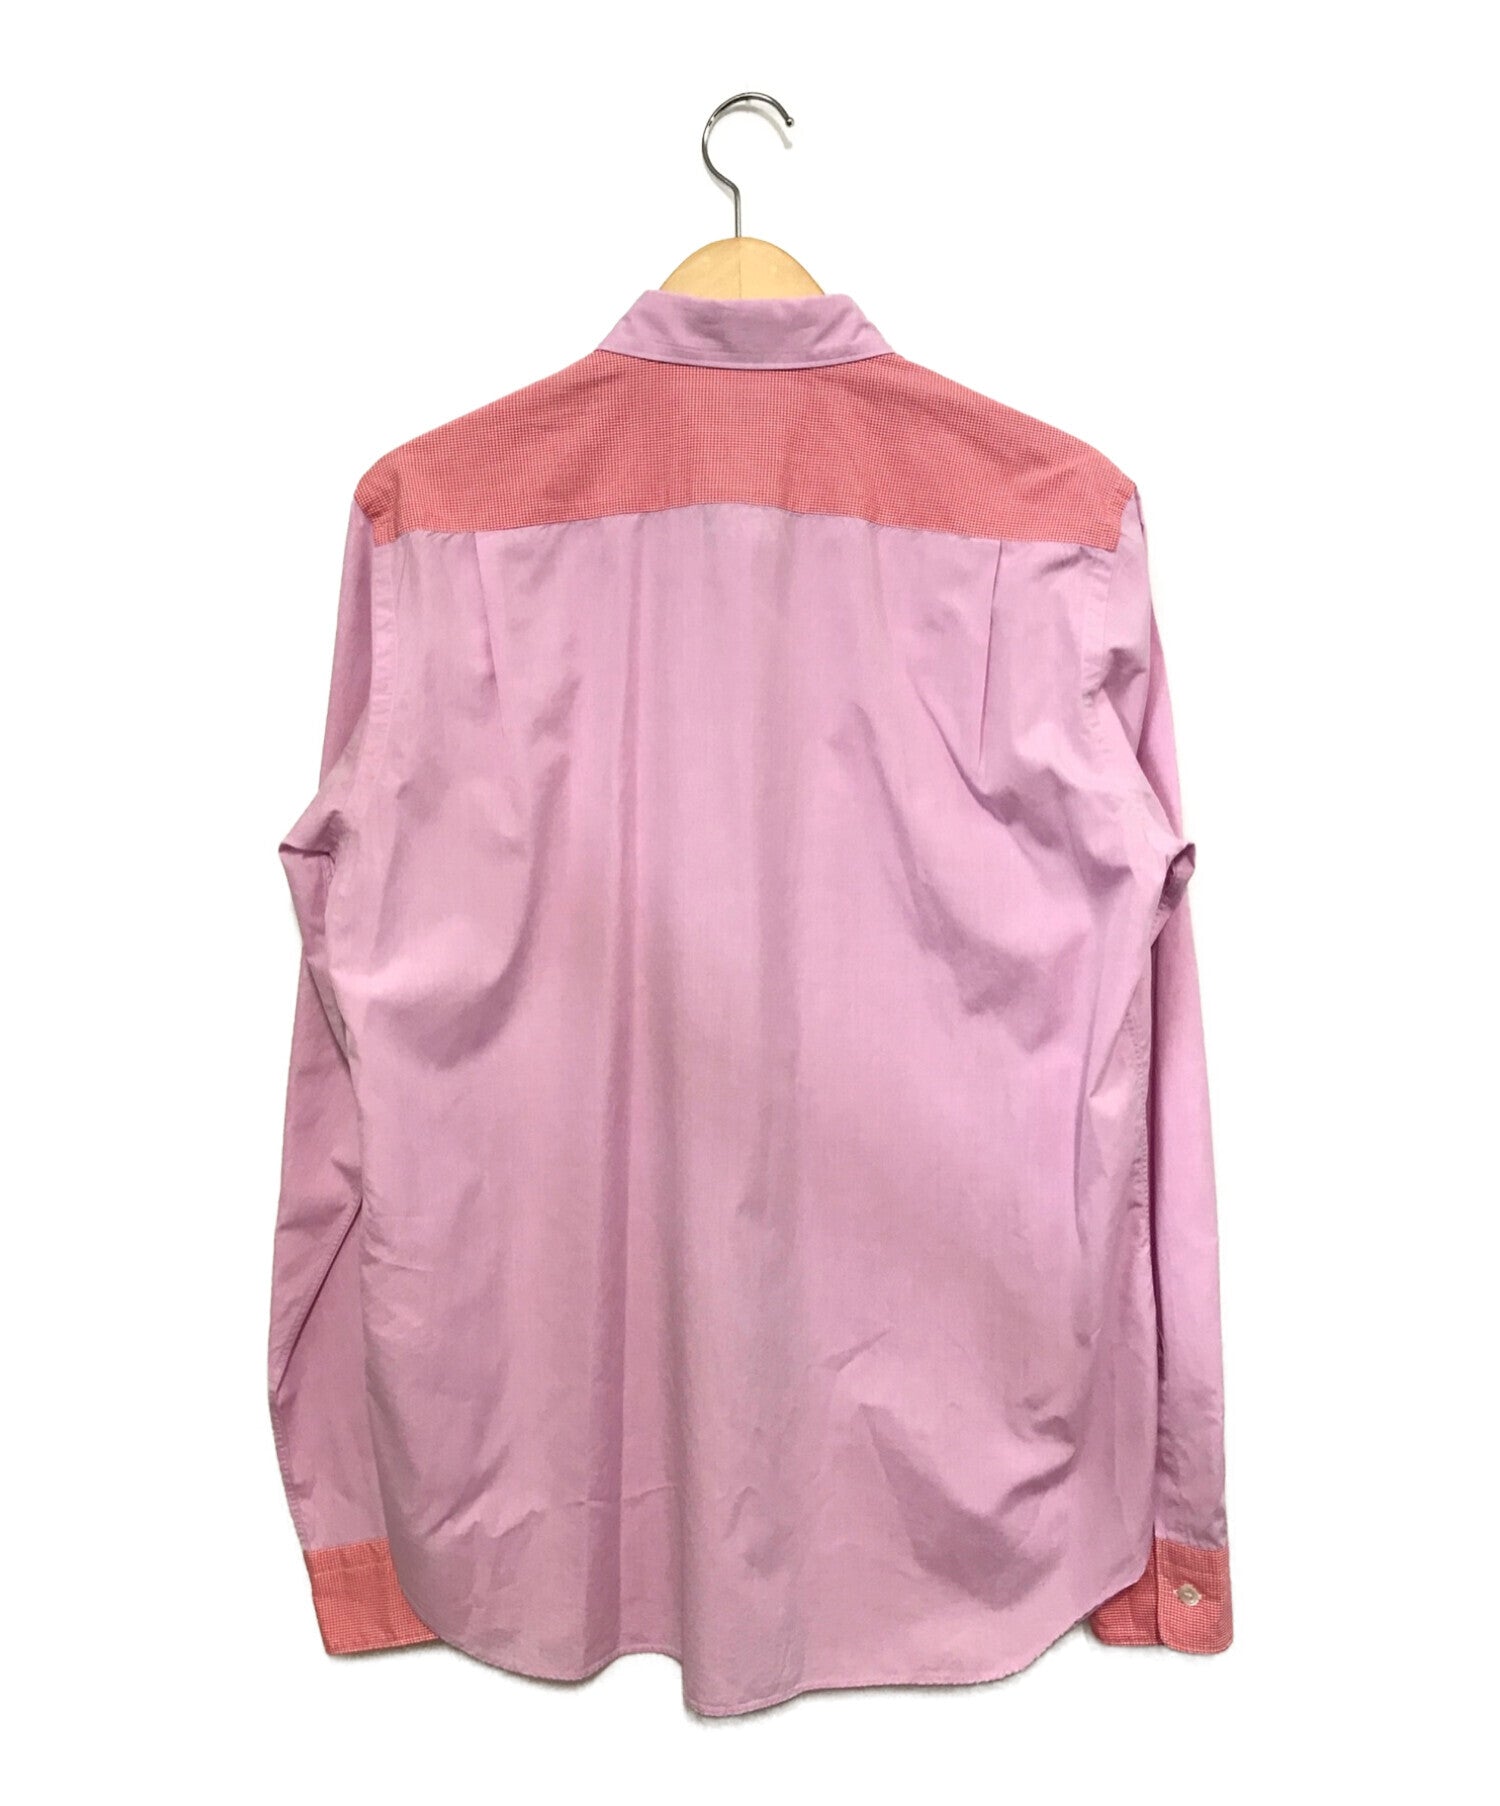 COMME des GARCONS tricot shirt HC-B118 | Archive Factory